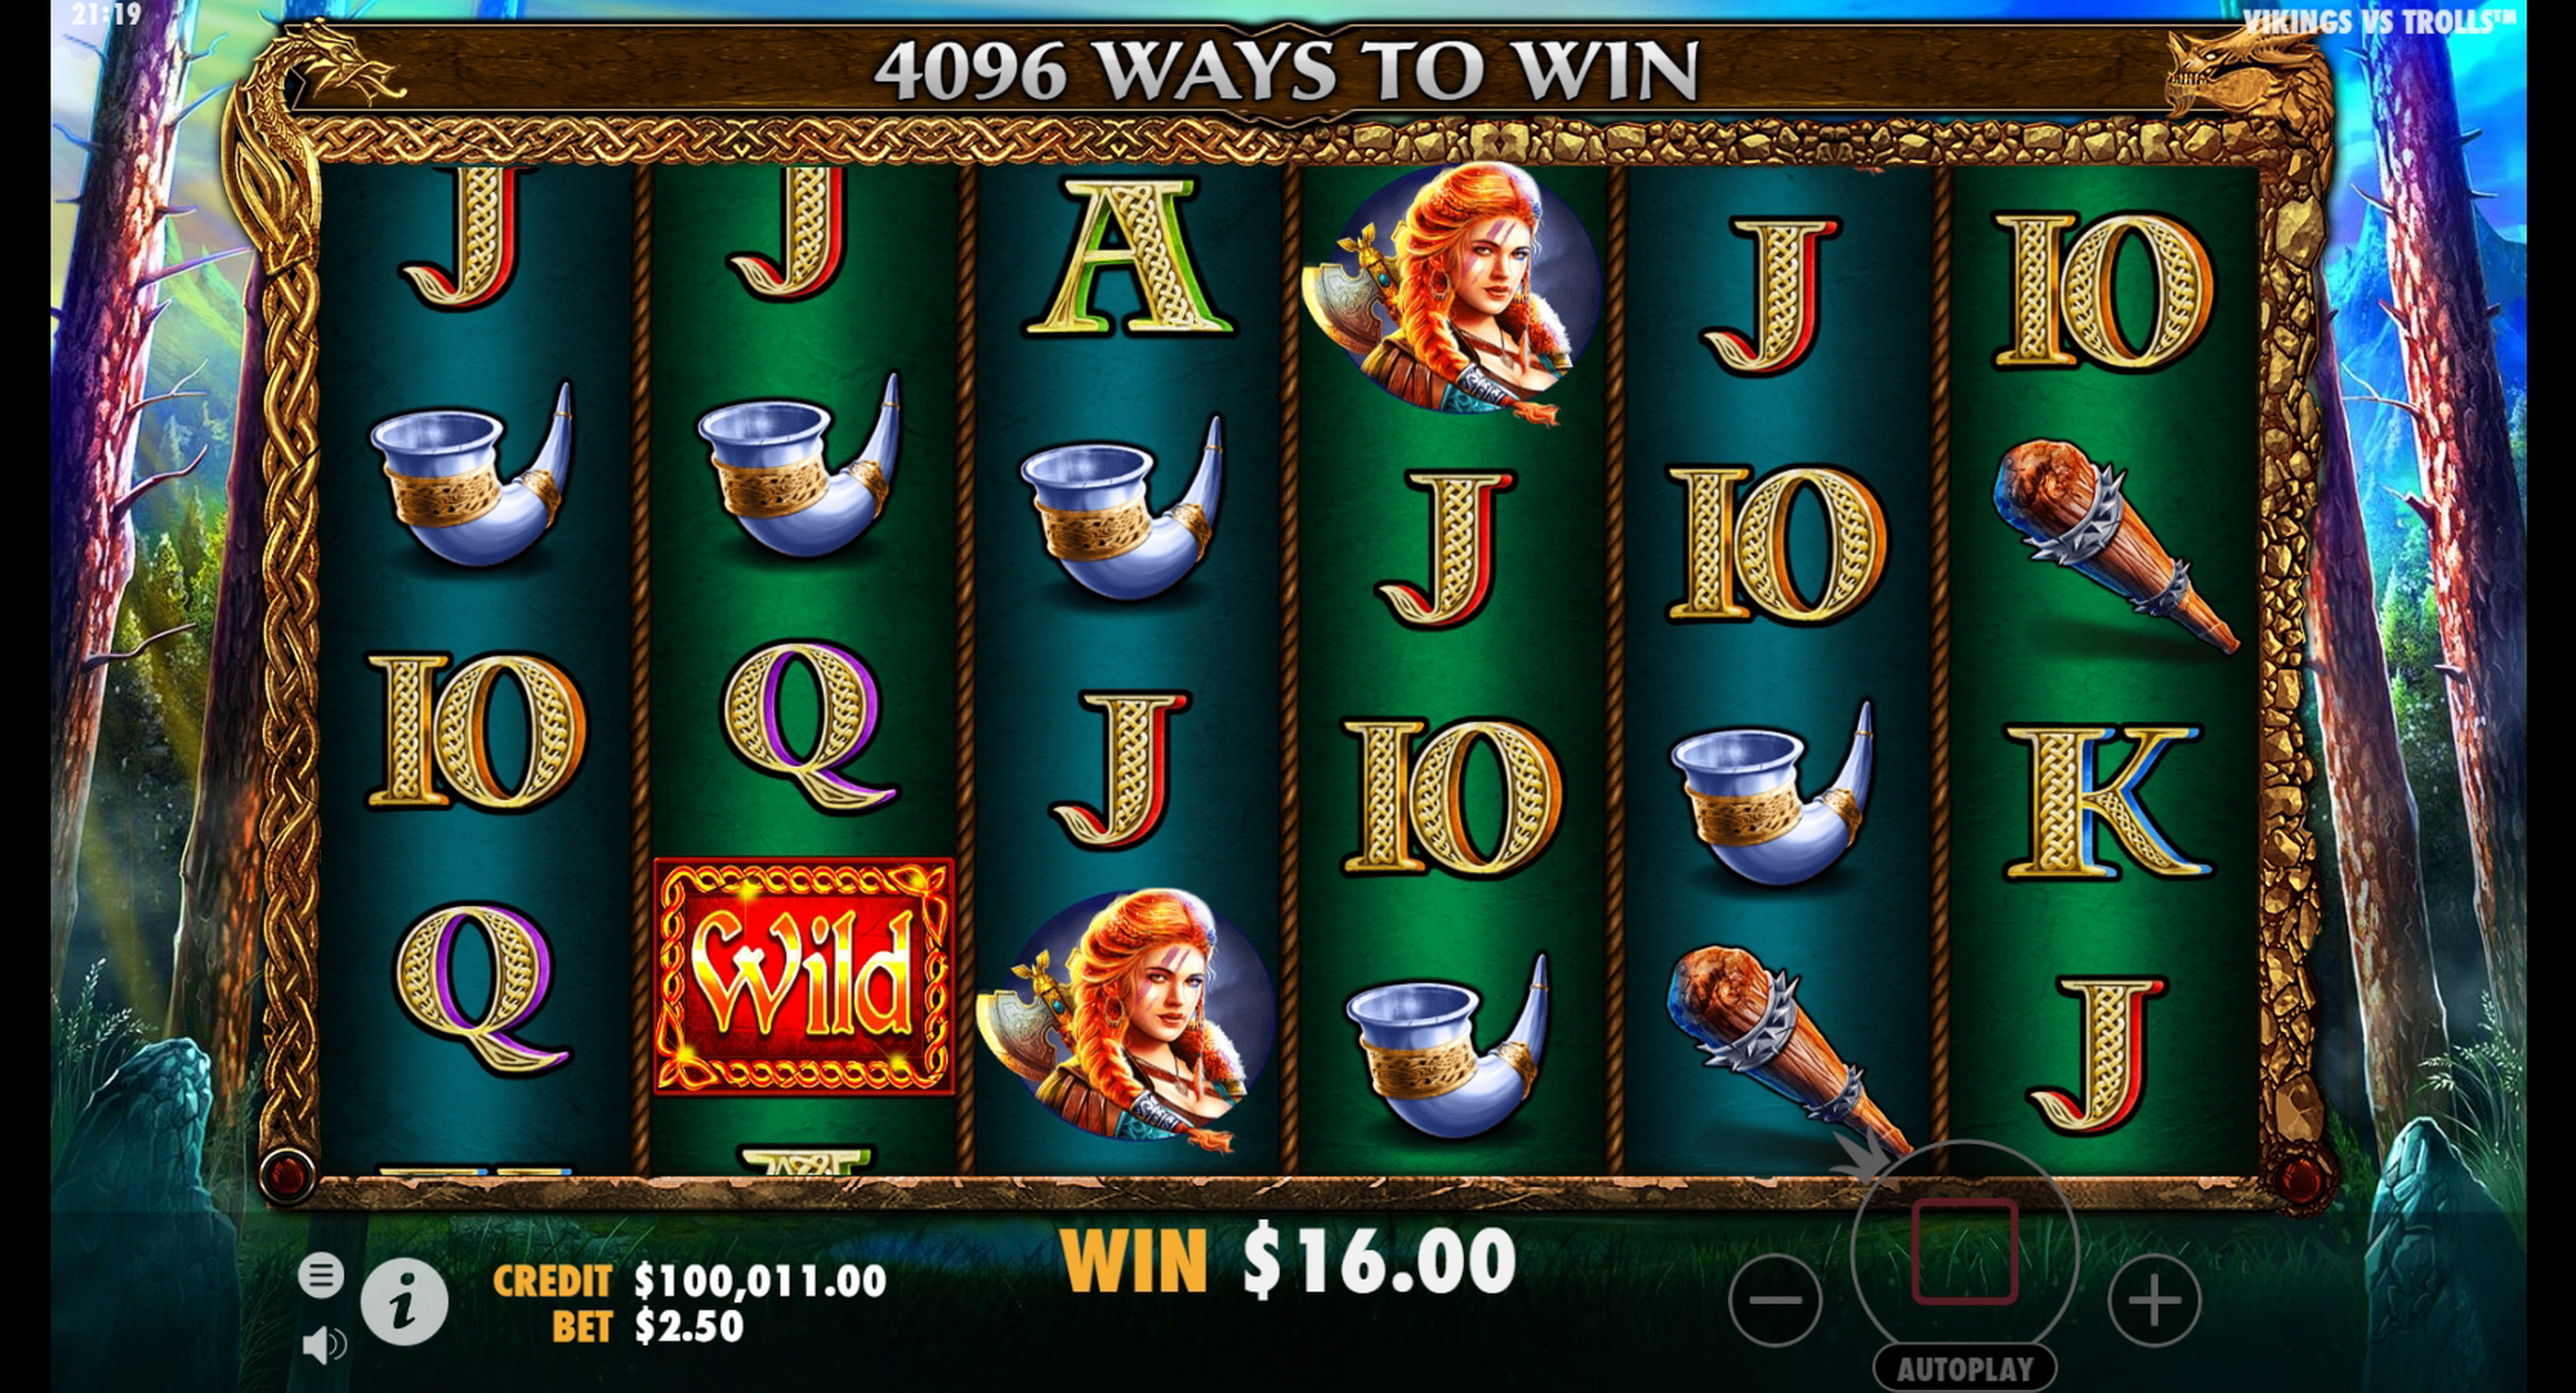 Win Money in Vikings vs Trolls Free Slot Game by Pragmatic Play